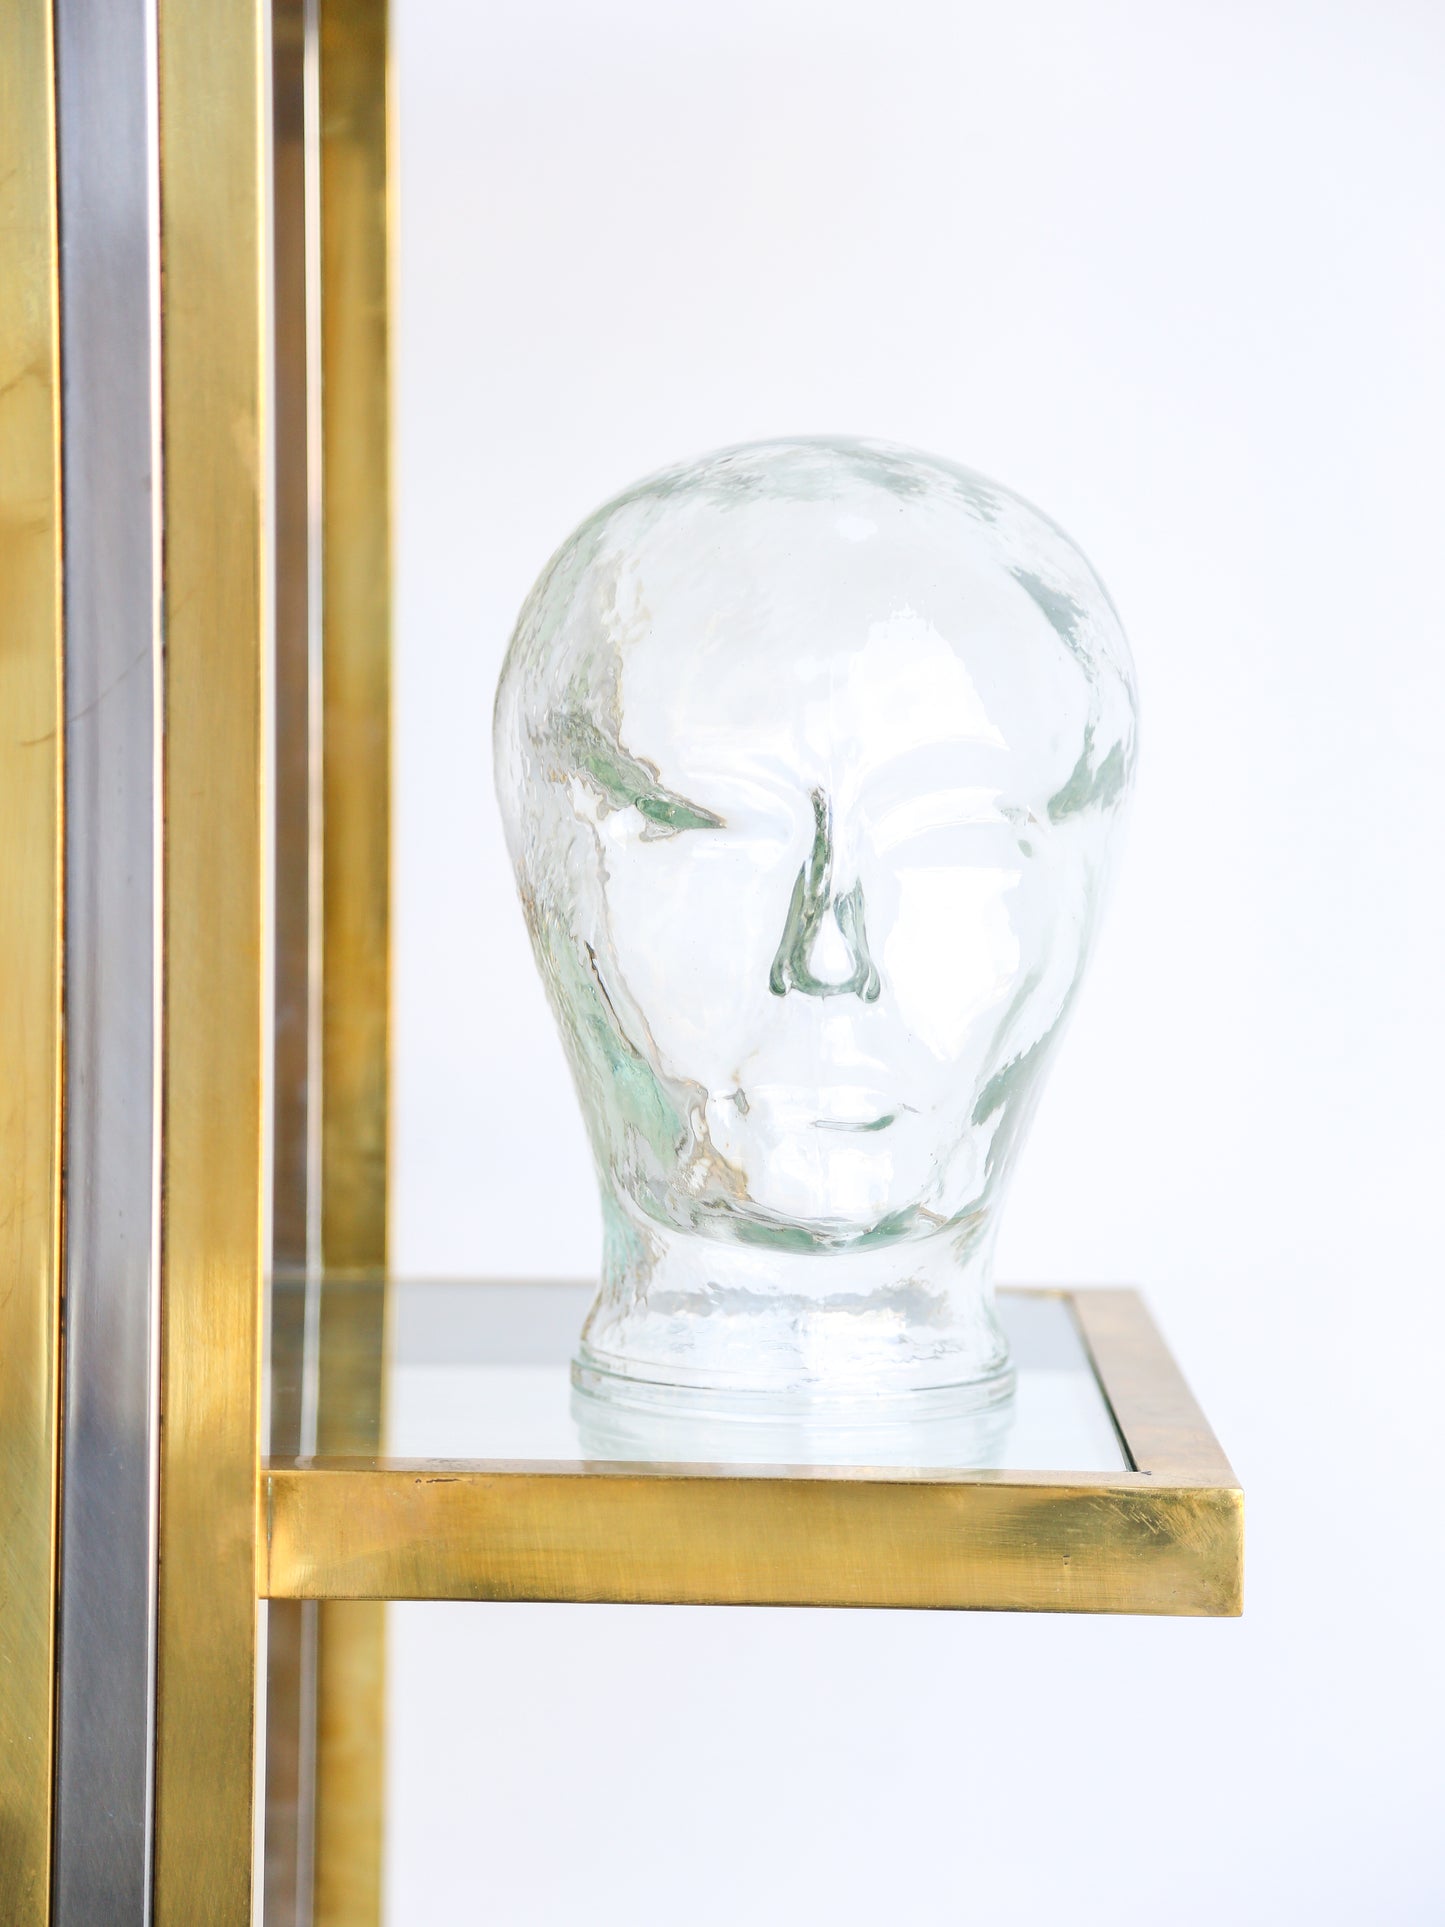 Italian Mid Century Modern Crystal Glass Head Sculpture by Piero Fornasetti 1960s